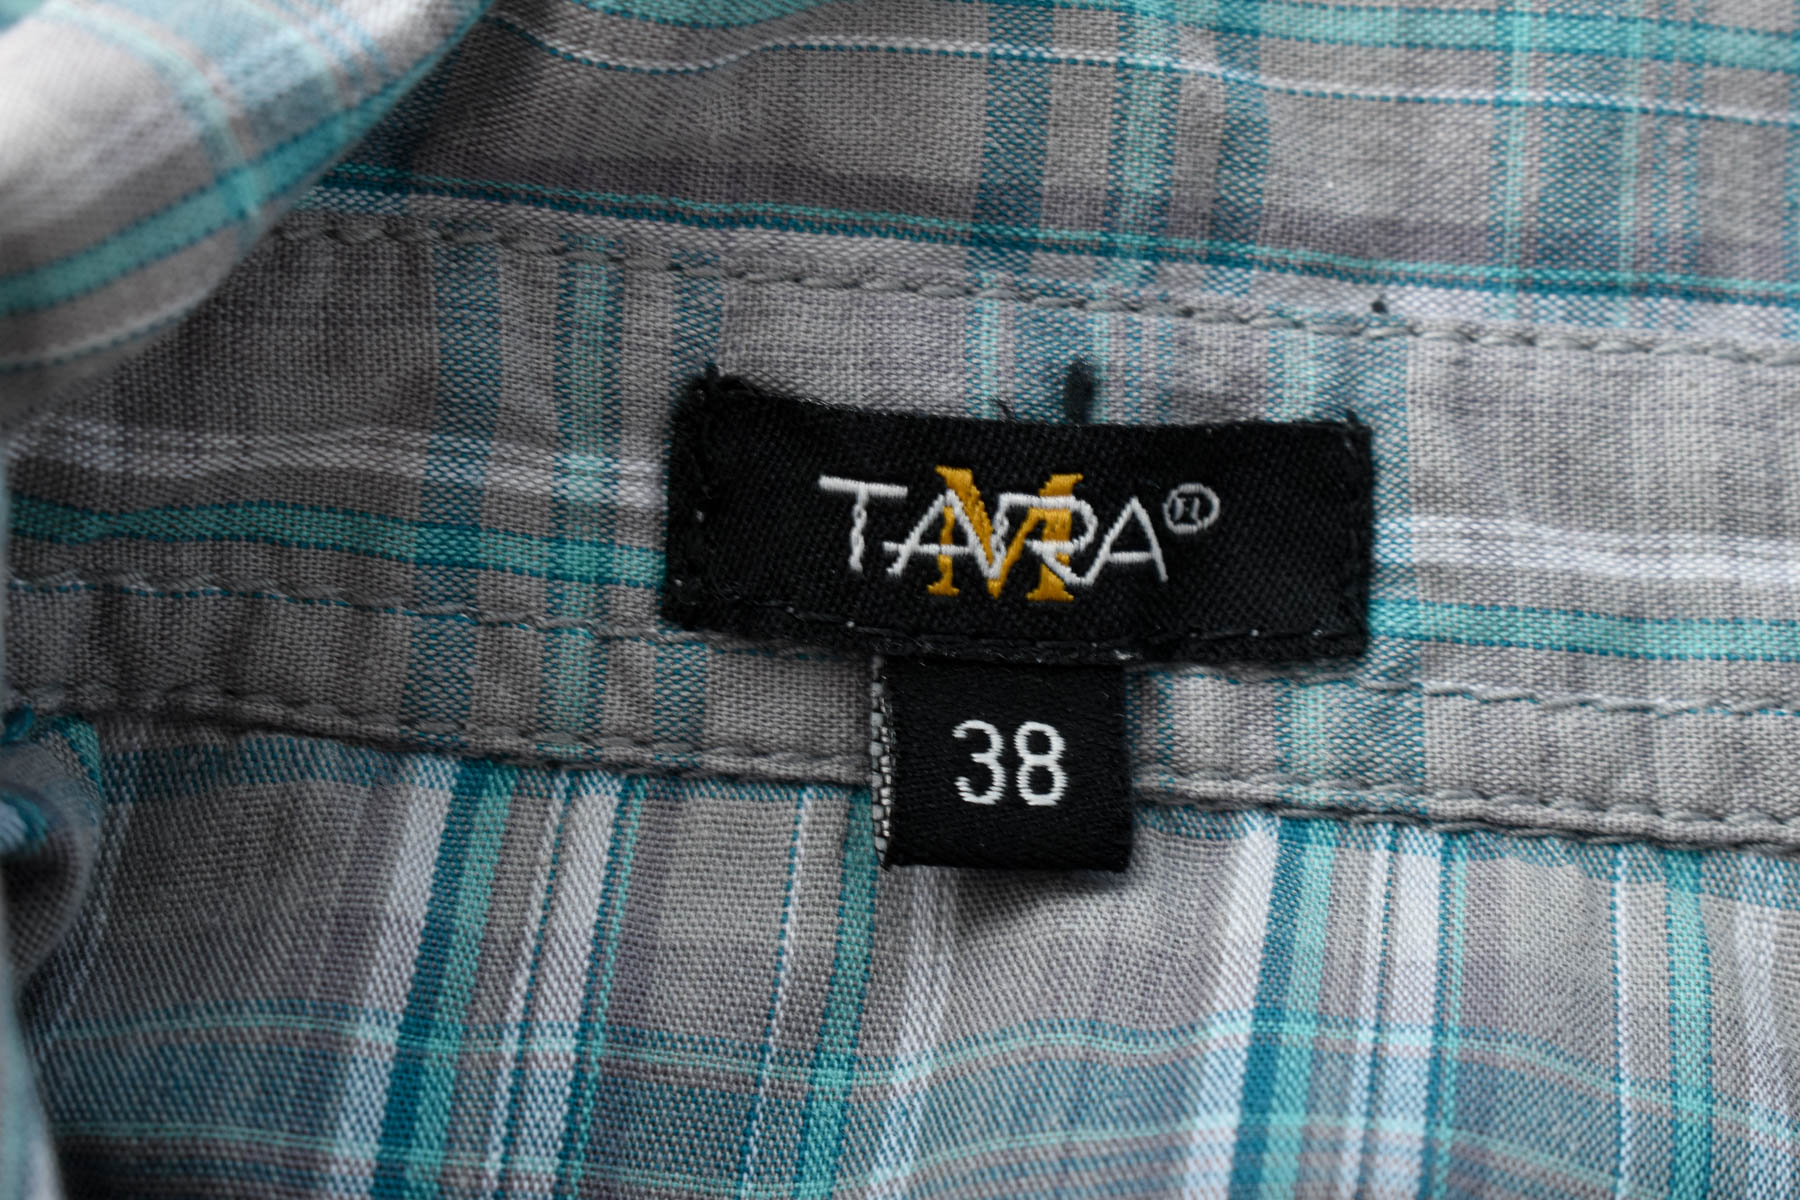 Women's shirt - Tara - 2